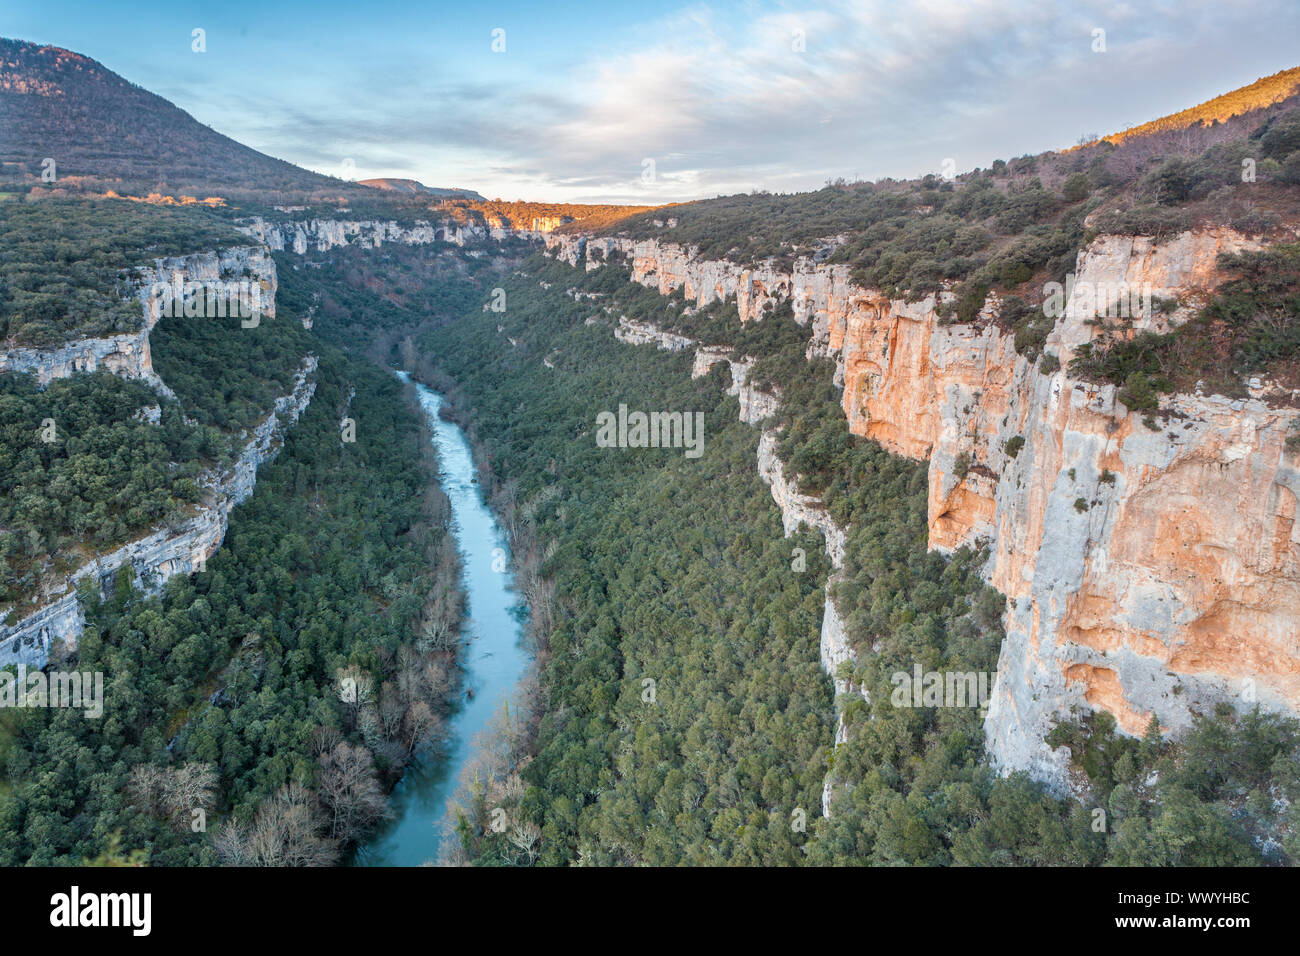 Viewpoint of the River Ebro Canyon near Pesquera de Ebro village, Paramos region, Burgos, Spain Stock Photo